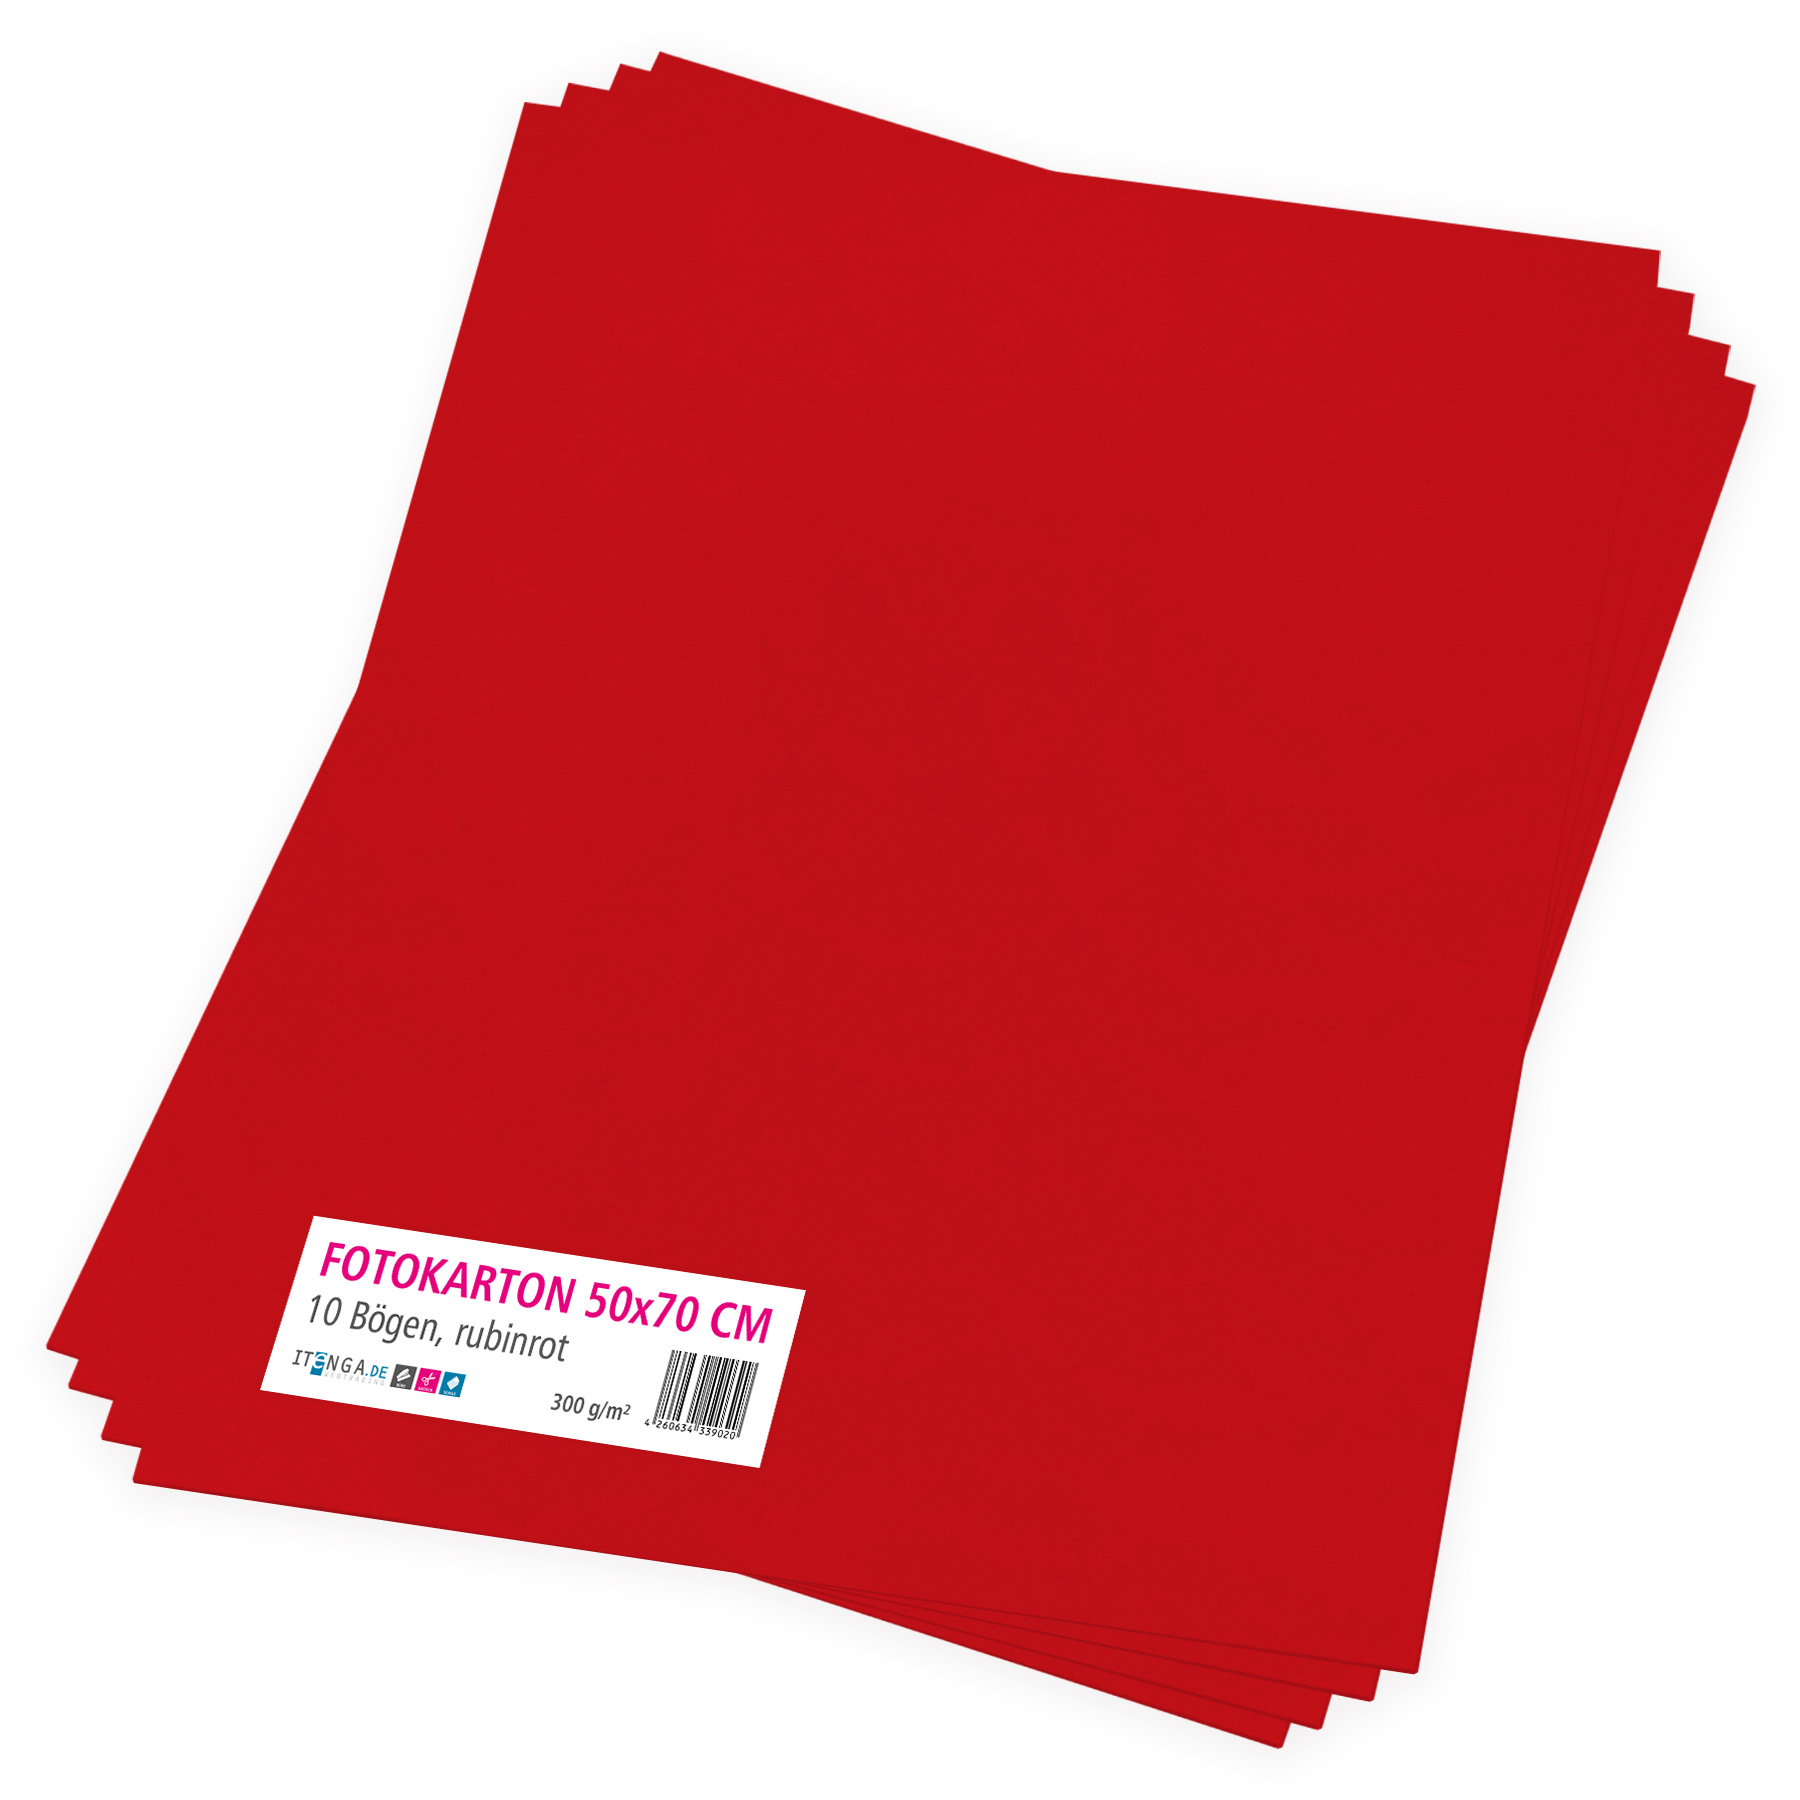 itenga Fotokarton rubinrot - 50x70cm 300g/qm 10 Bogen